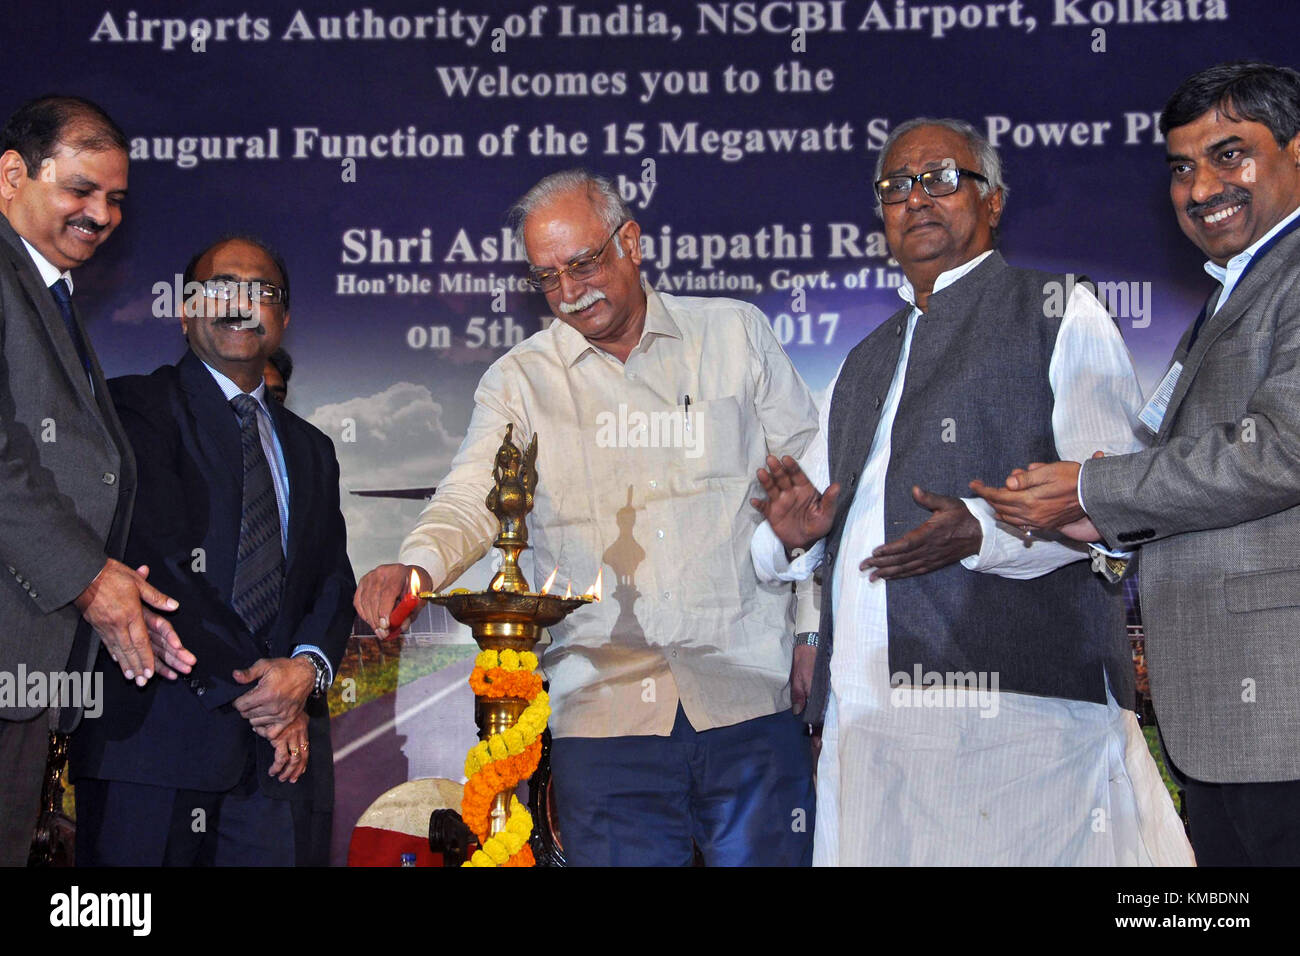 Ministre de l'Union européenne pour l'aviation civile p ashok gajapathi raju (au milieu), directeur de l'aéroport de Kolkata, nscbi atul dikshit avec autrui prend part à la cérémonie d'inauguration de 15 MW de centrales solaires à international Netaji Subhas Chandra Bose (nscbi) aéroport le 5 décembre 2017 à New Delhi. (Photo de saikat paul / pacific press) Banque D'Images